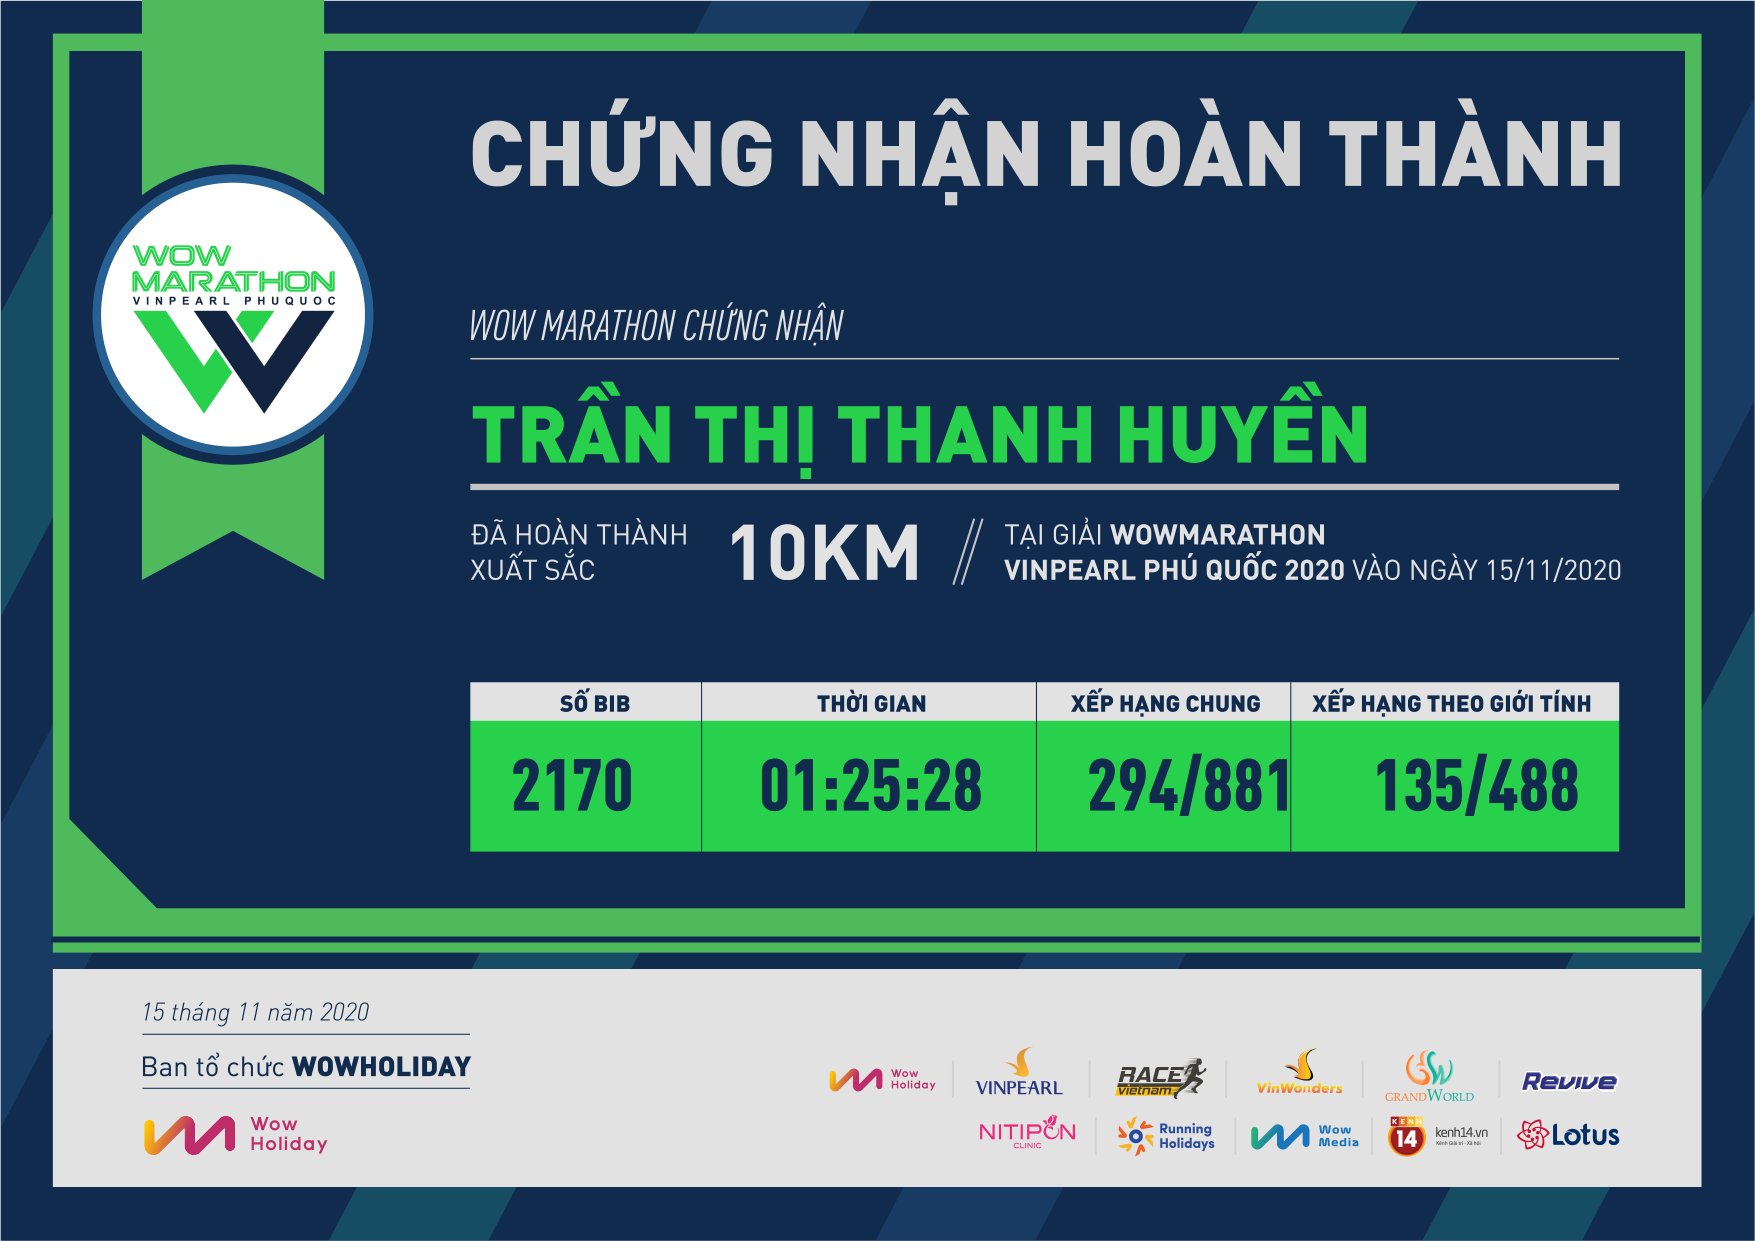 2170 - Trần Thị Thanh Huyền